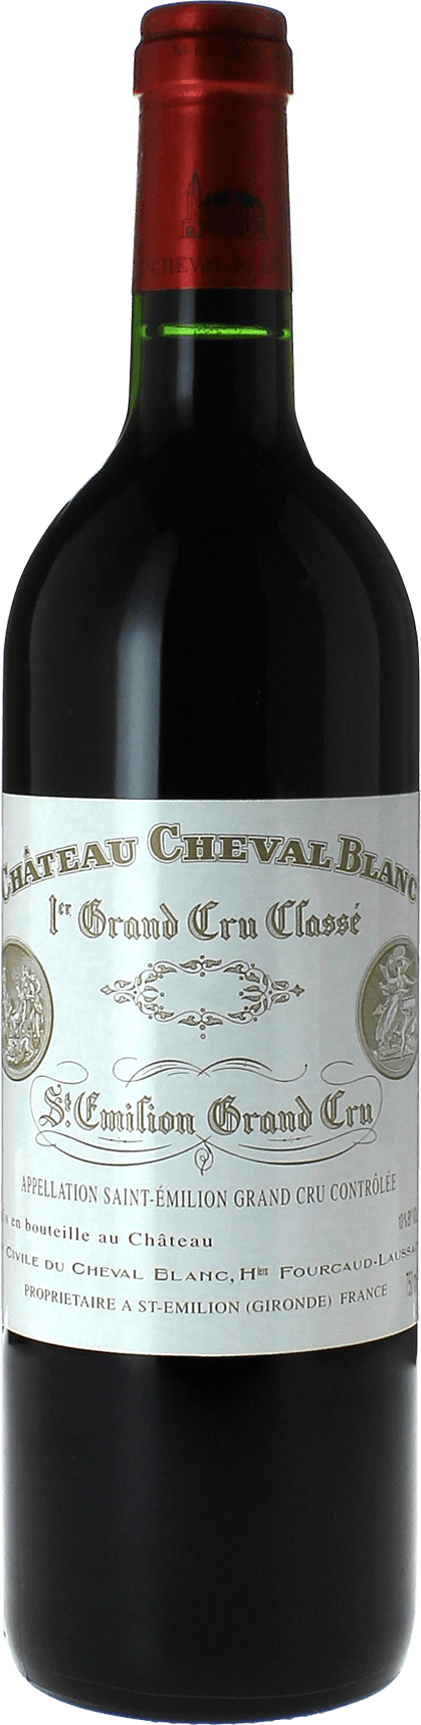 Cheval blanc 2017 1er Grand cru class A Saint-Emilion, Bordeaux rouge